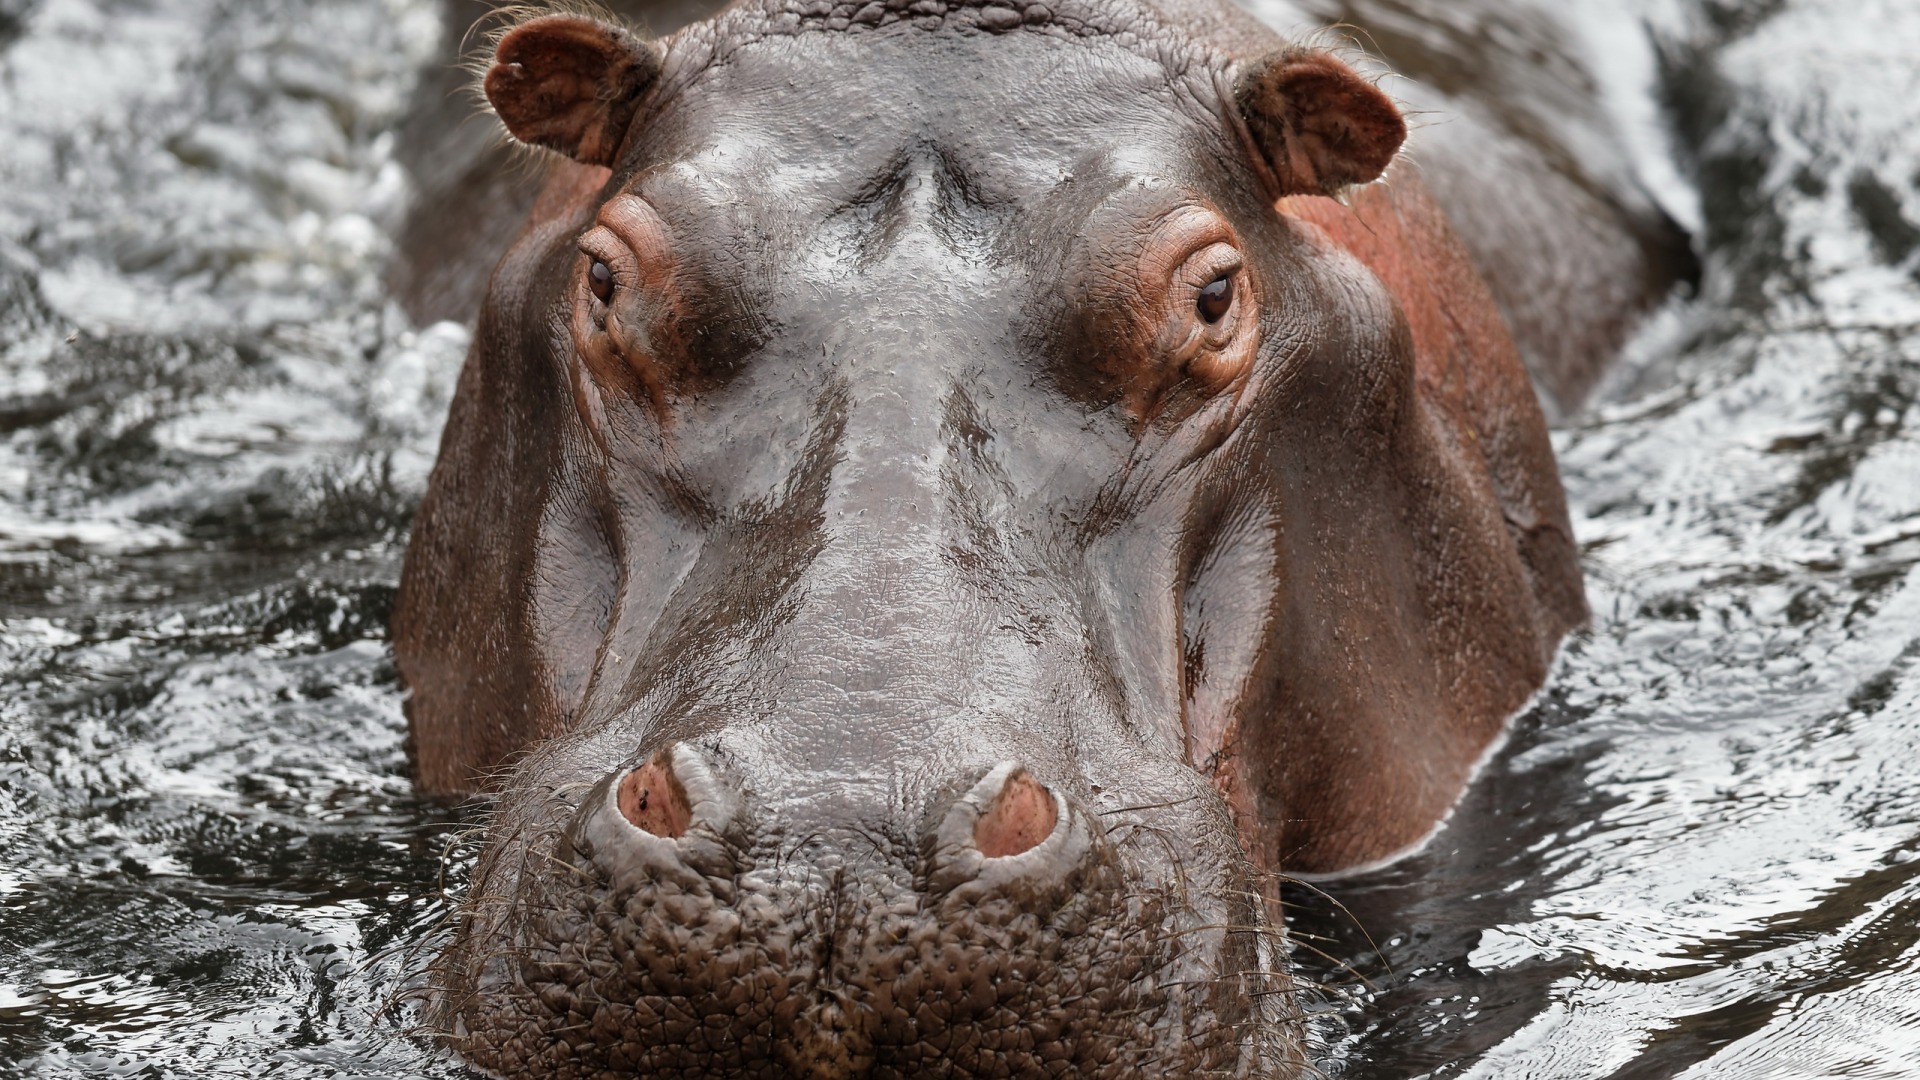 "Хотел сфотографировать животное": в Кении от укуса бегемота погиб турист